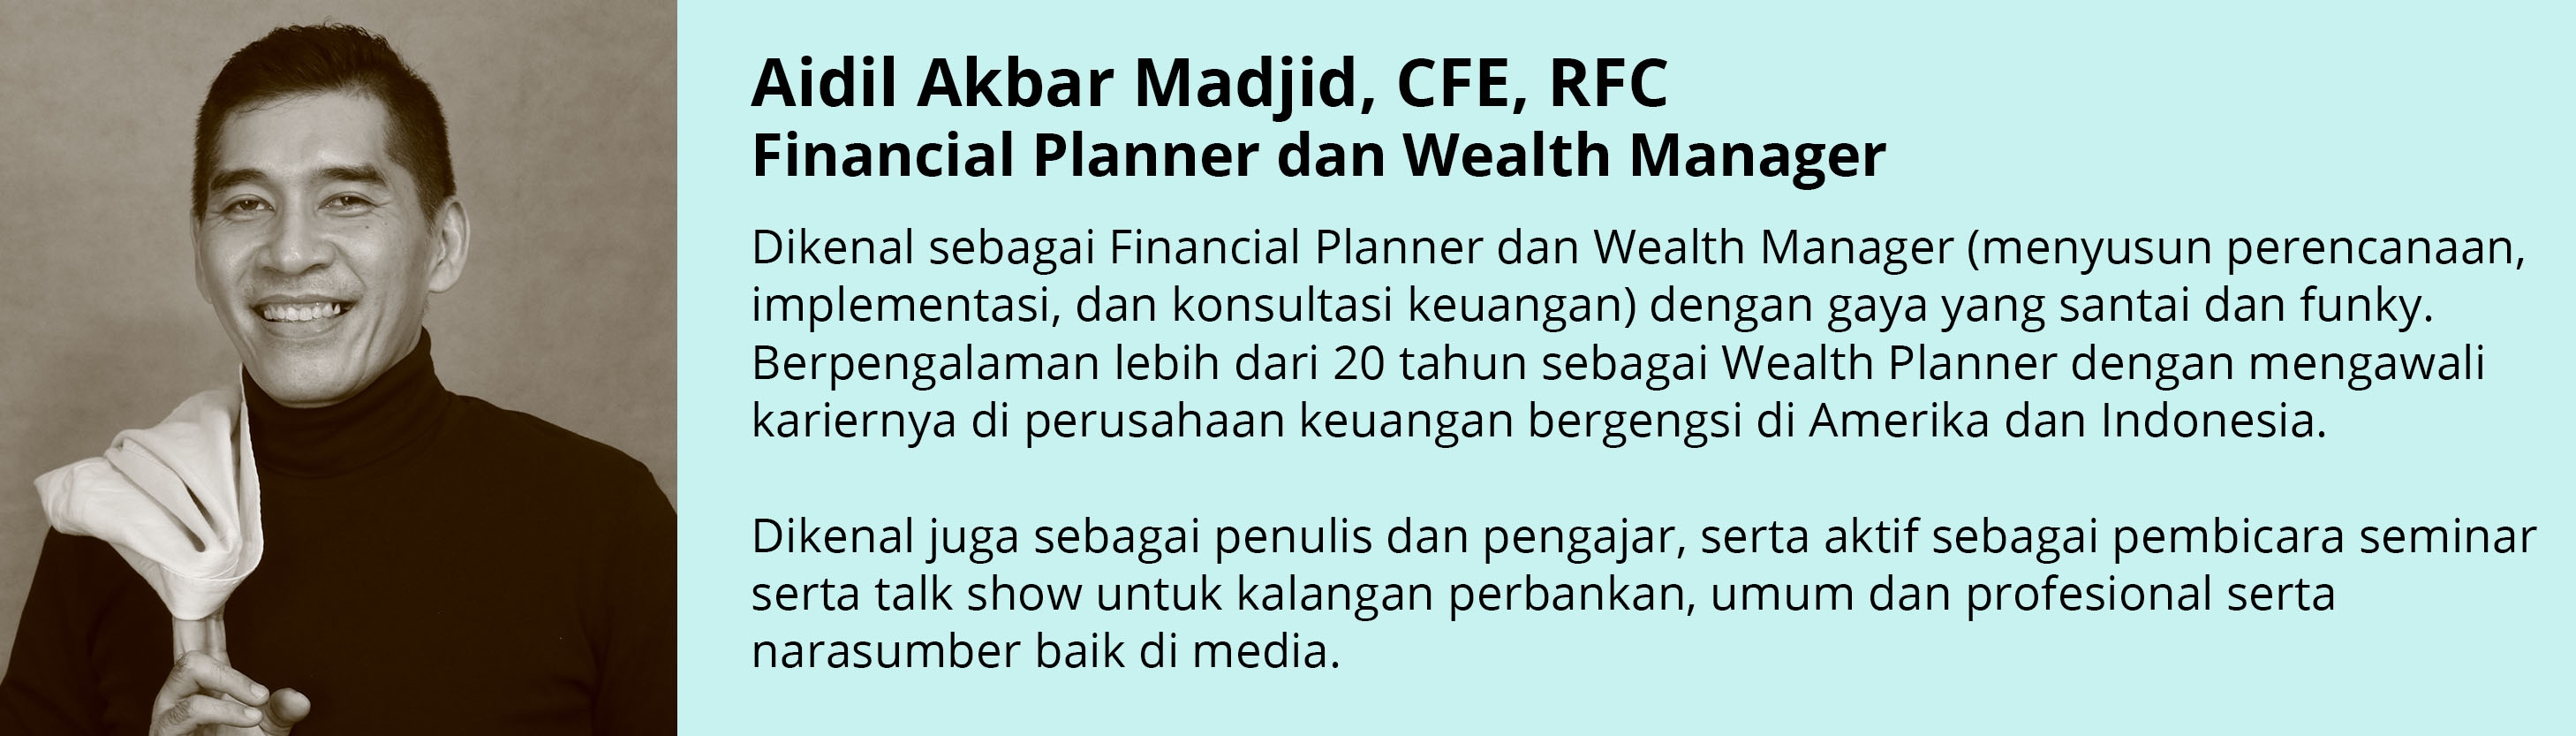 aidil akbar madjid financial planner